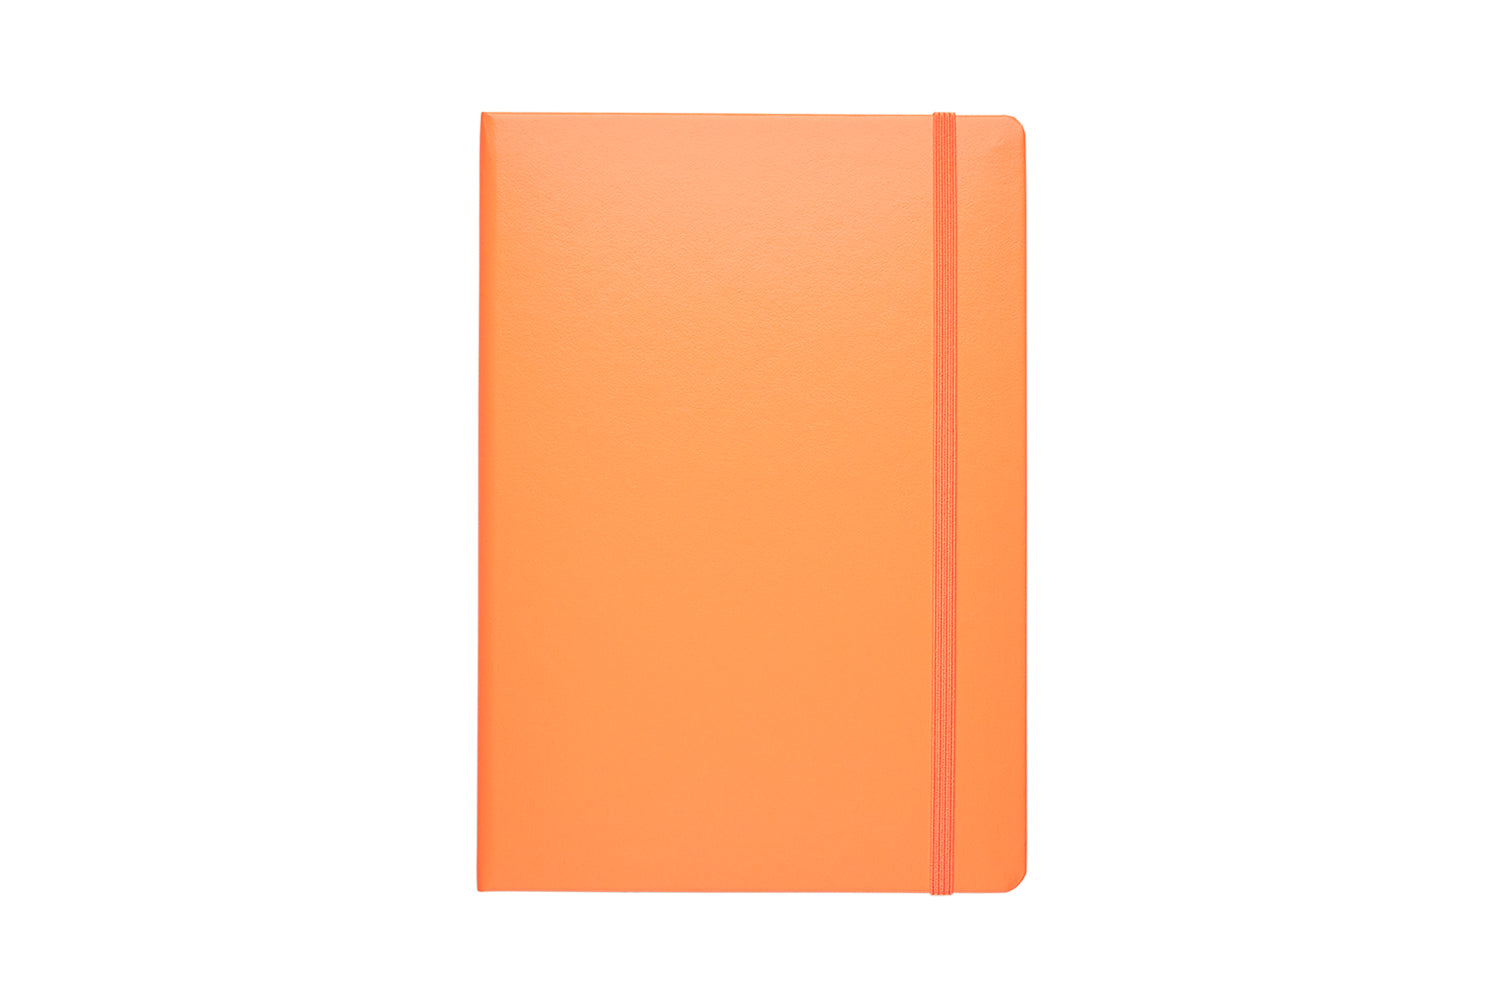 Leuchtturm1917 Notebook A5 Hard Cover, Ruled